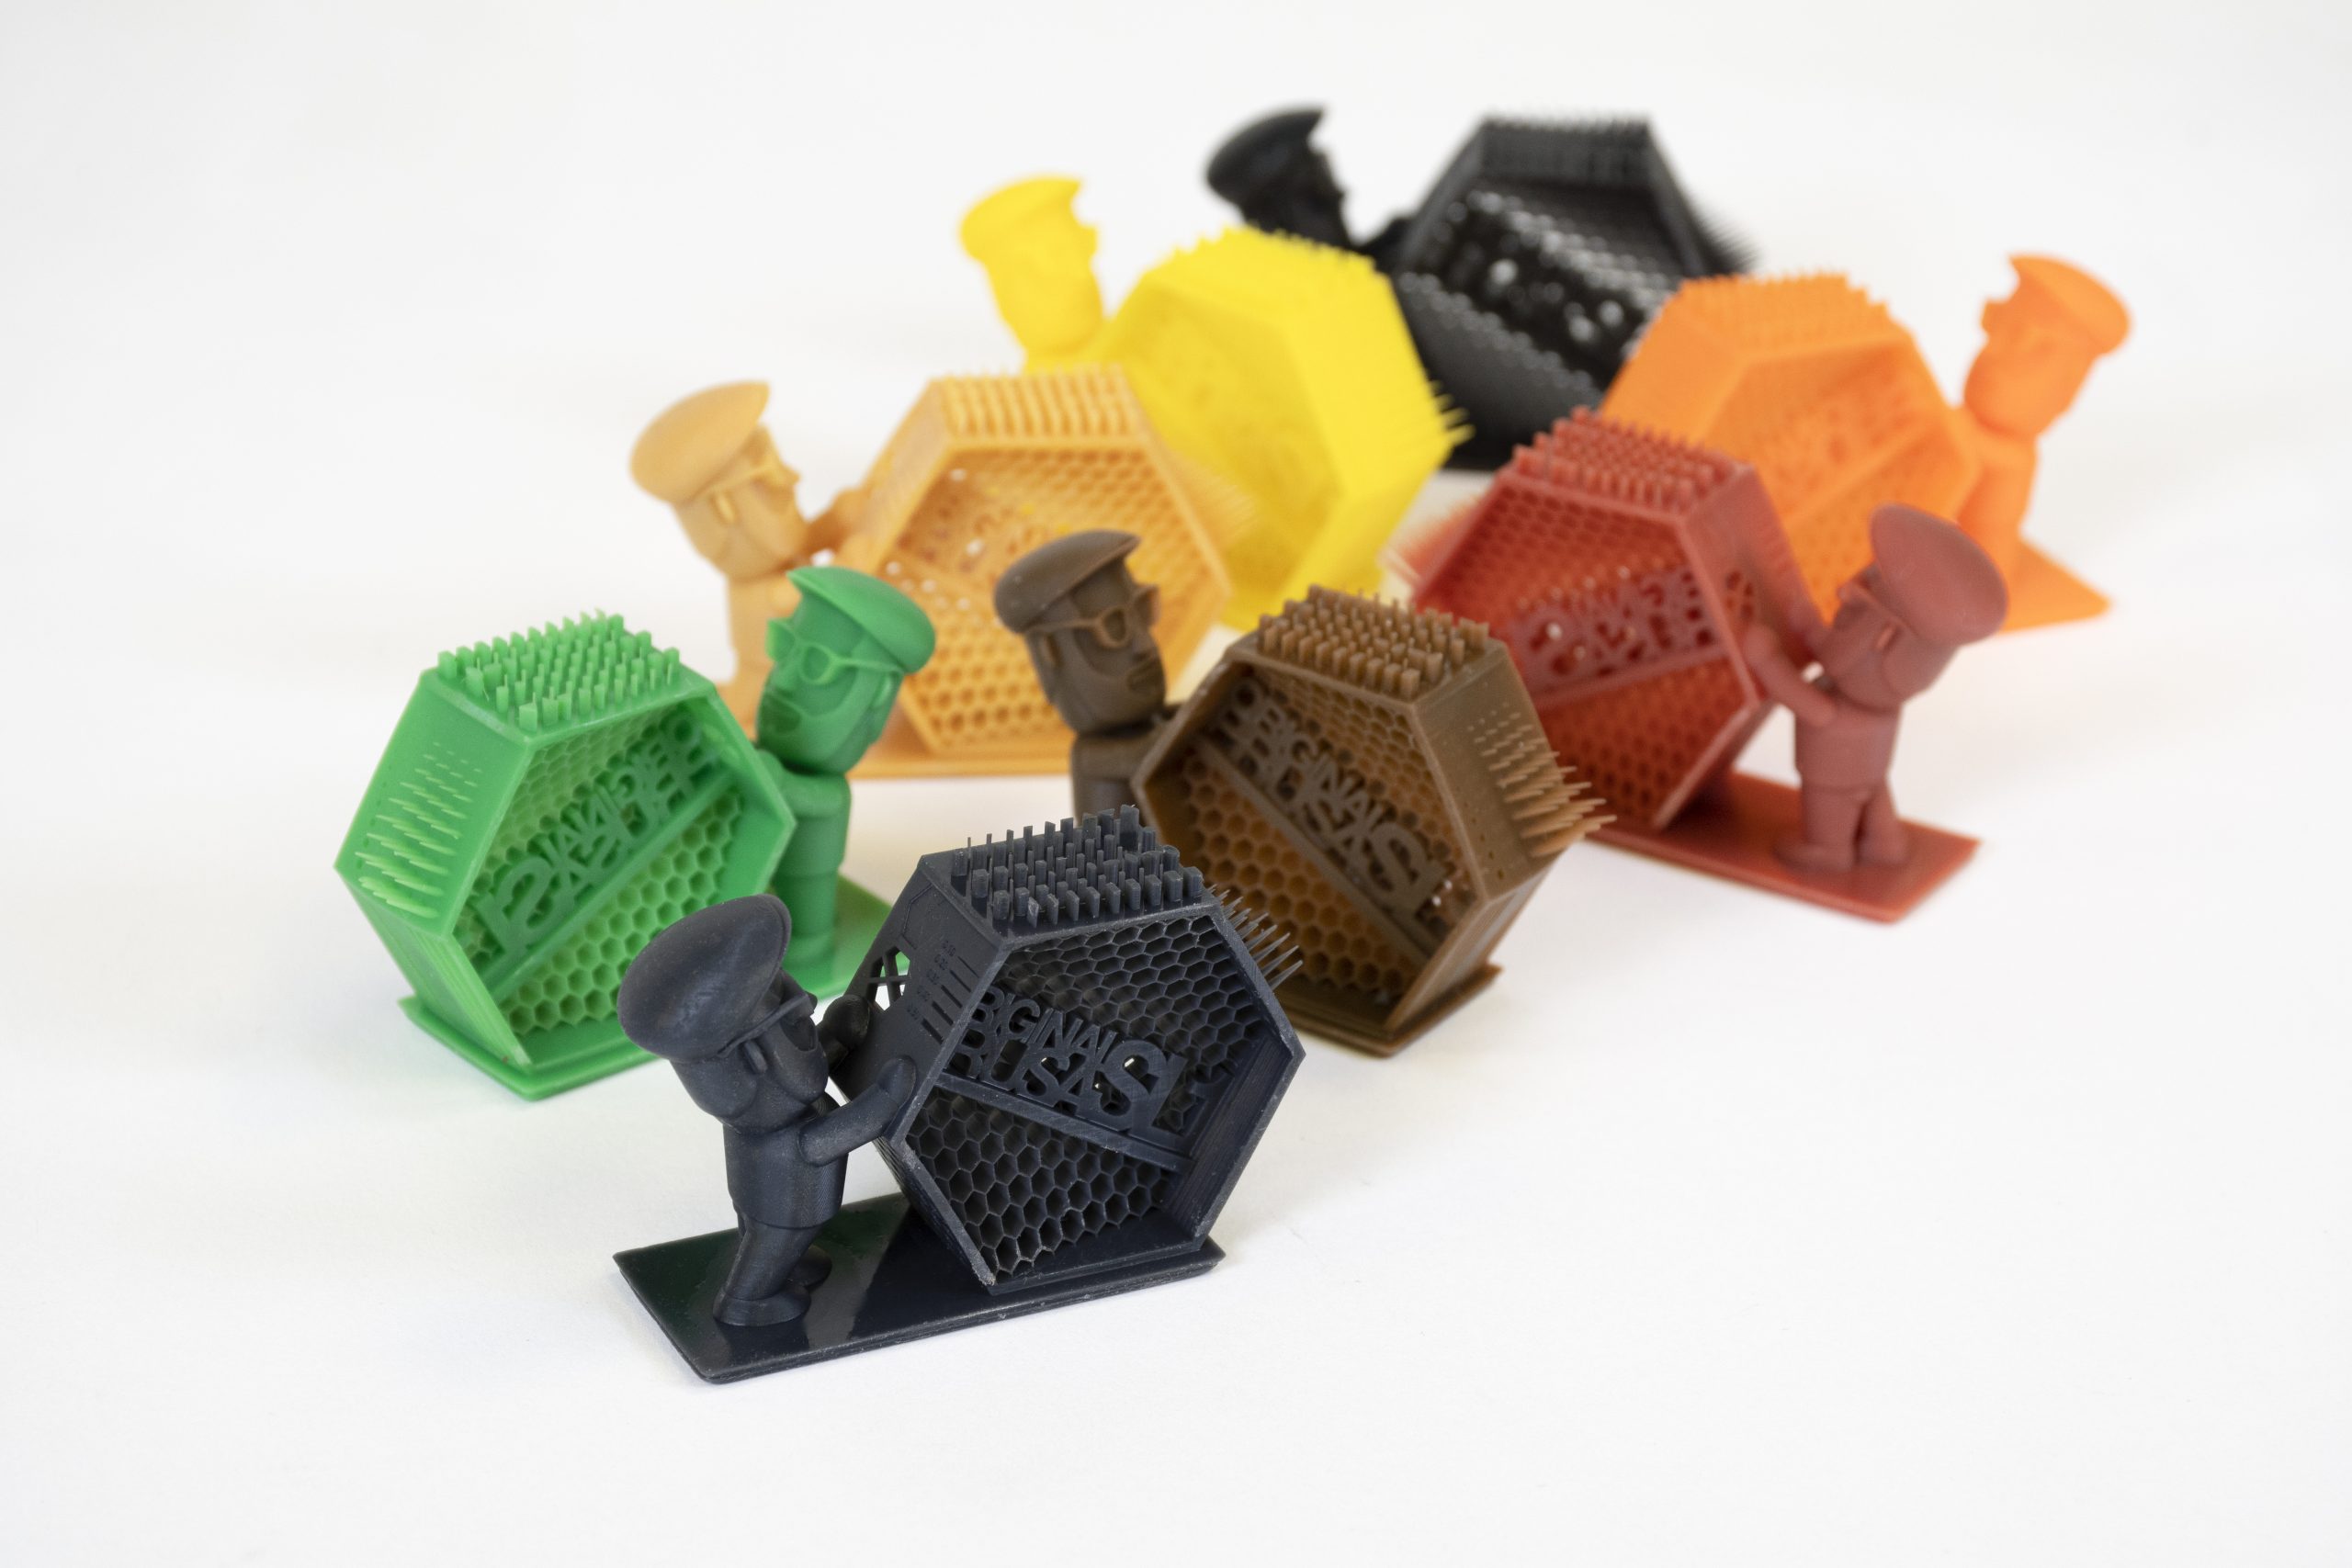 Stampa 3D a resina: tutto quello che devi sapere - Guide - Stampa 3D forum